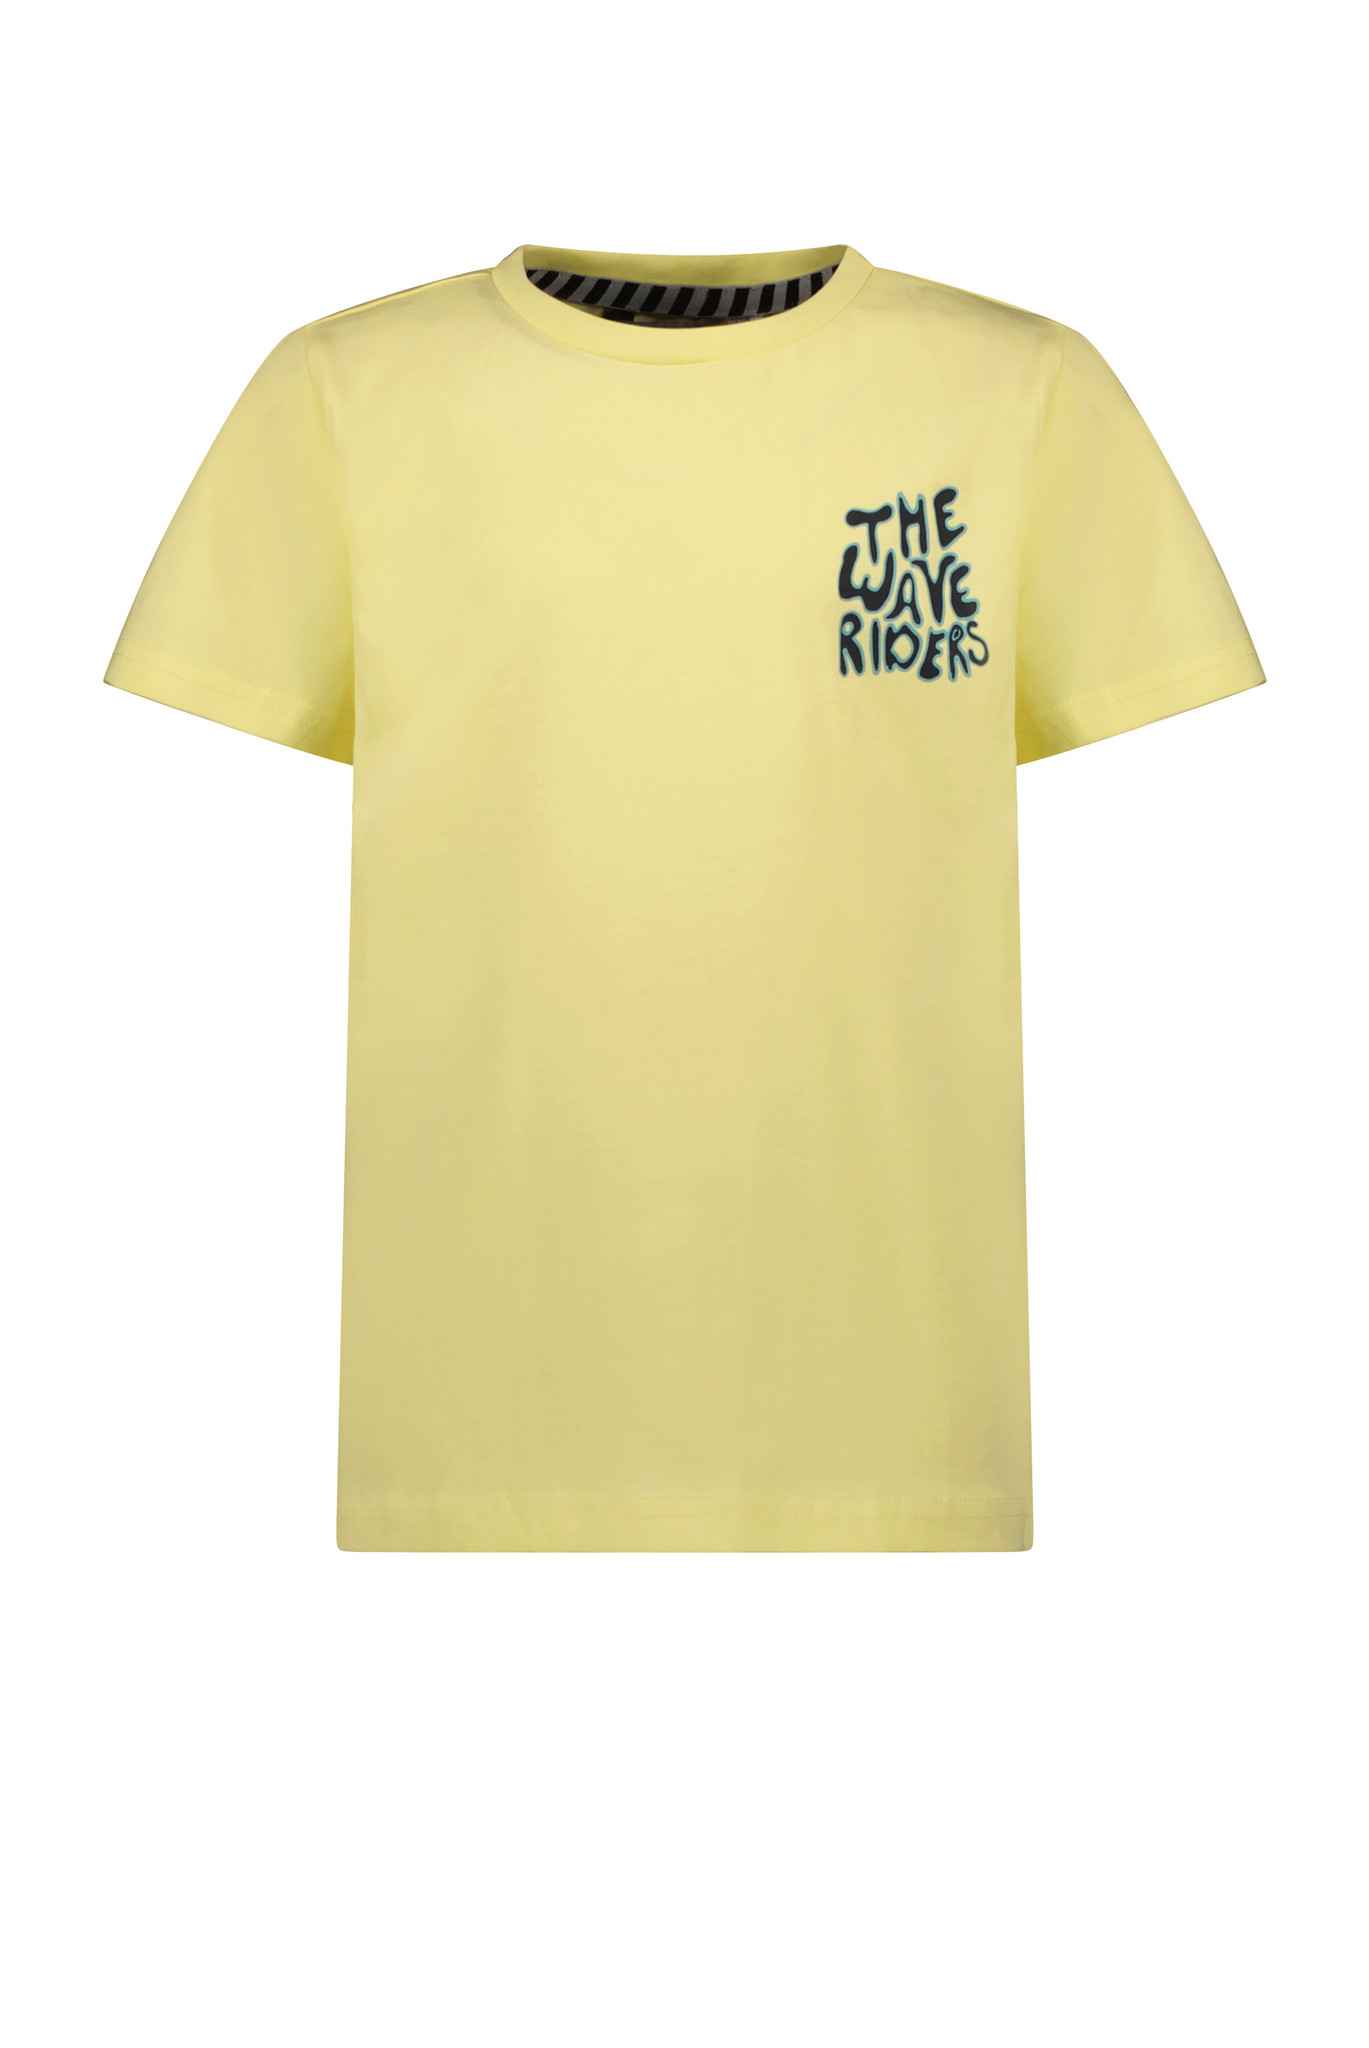 Moodstreet M303-6422 Jongens T-shirt Yellow - Maat 122/128